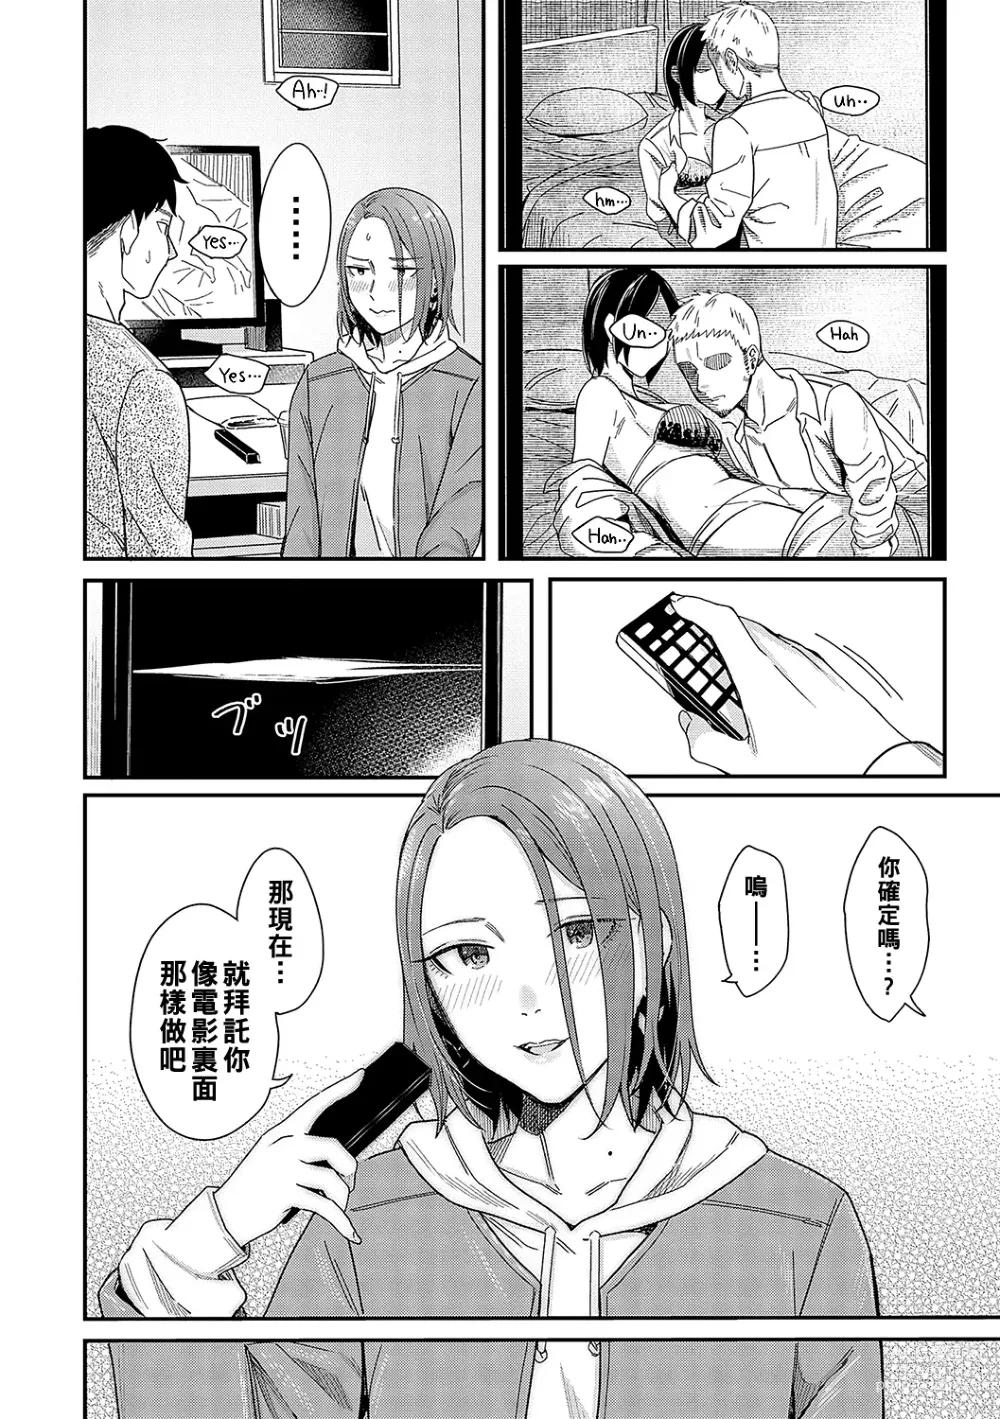 Page 12 of manga Kudaranai Renai Eiga no You ni... - Like a crappy romance movie...